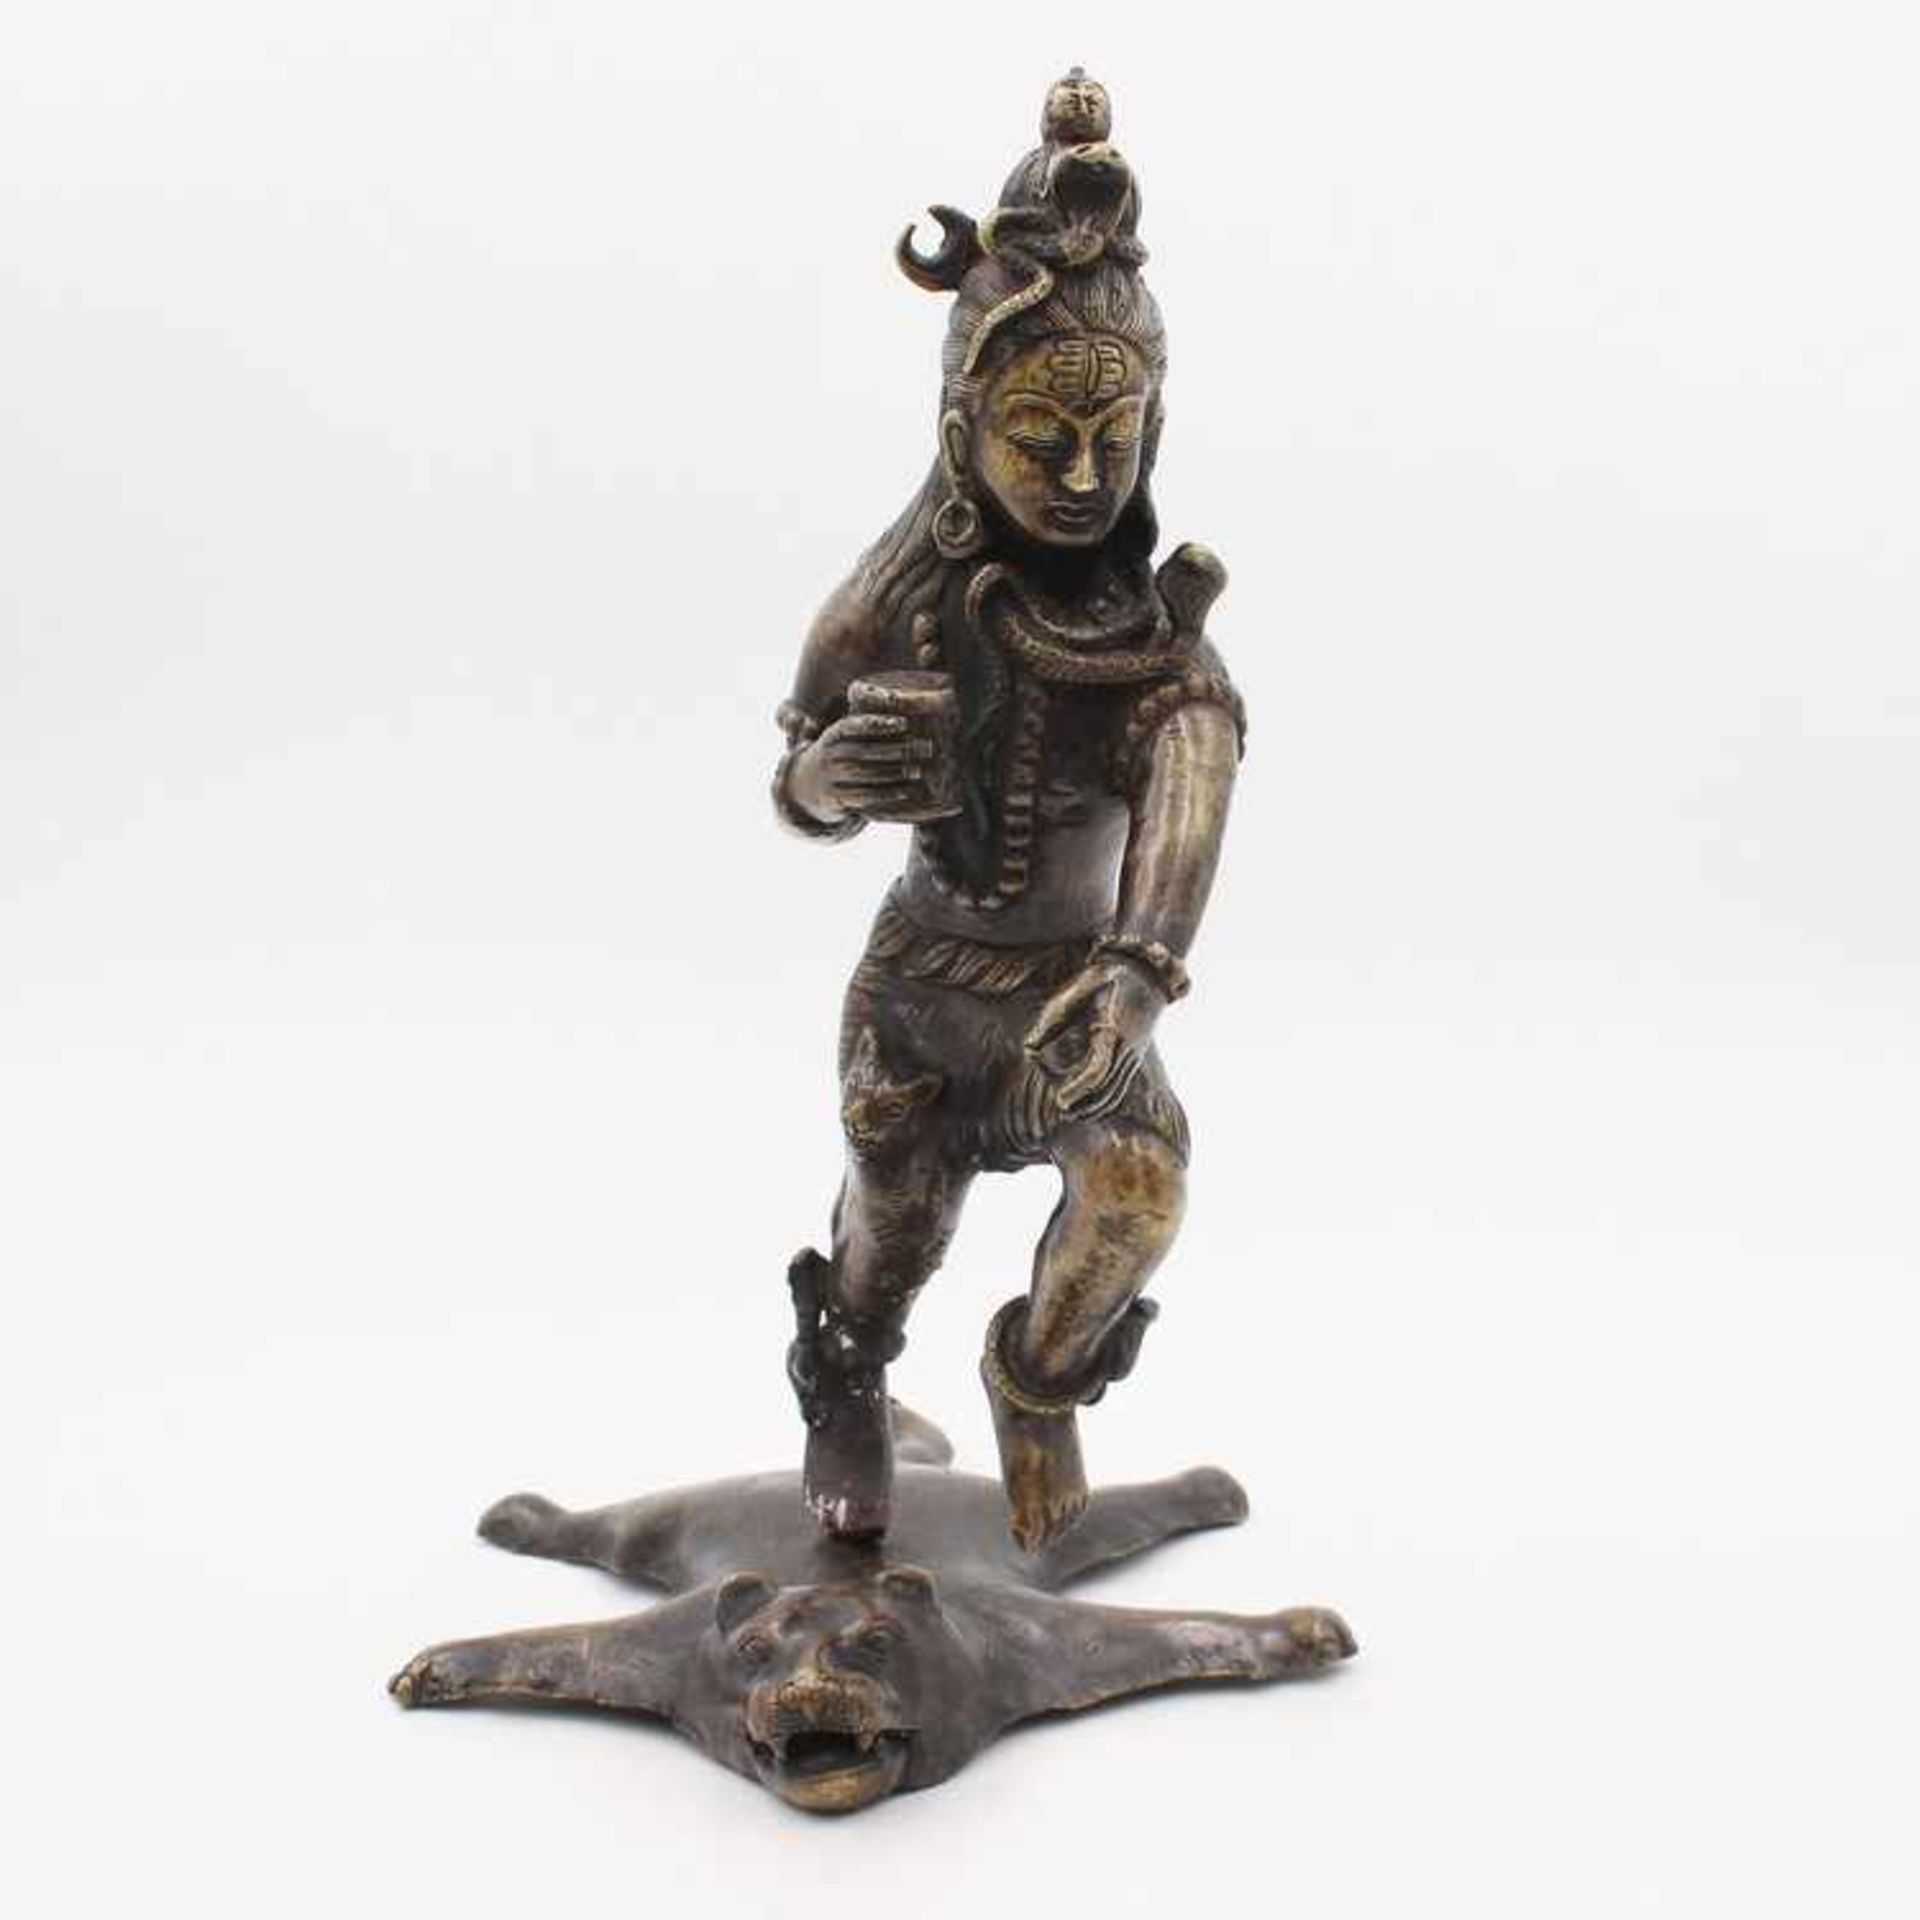 Figur - Hinduismus20.Jh., Bronze, patiniert, vollplastische Figur v. auf dem Tigerfell tanzenden